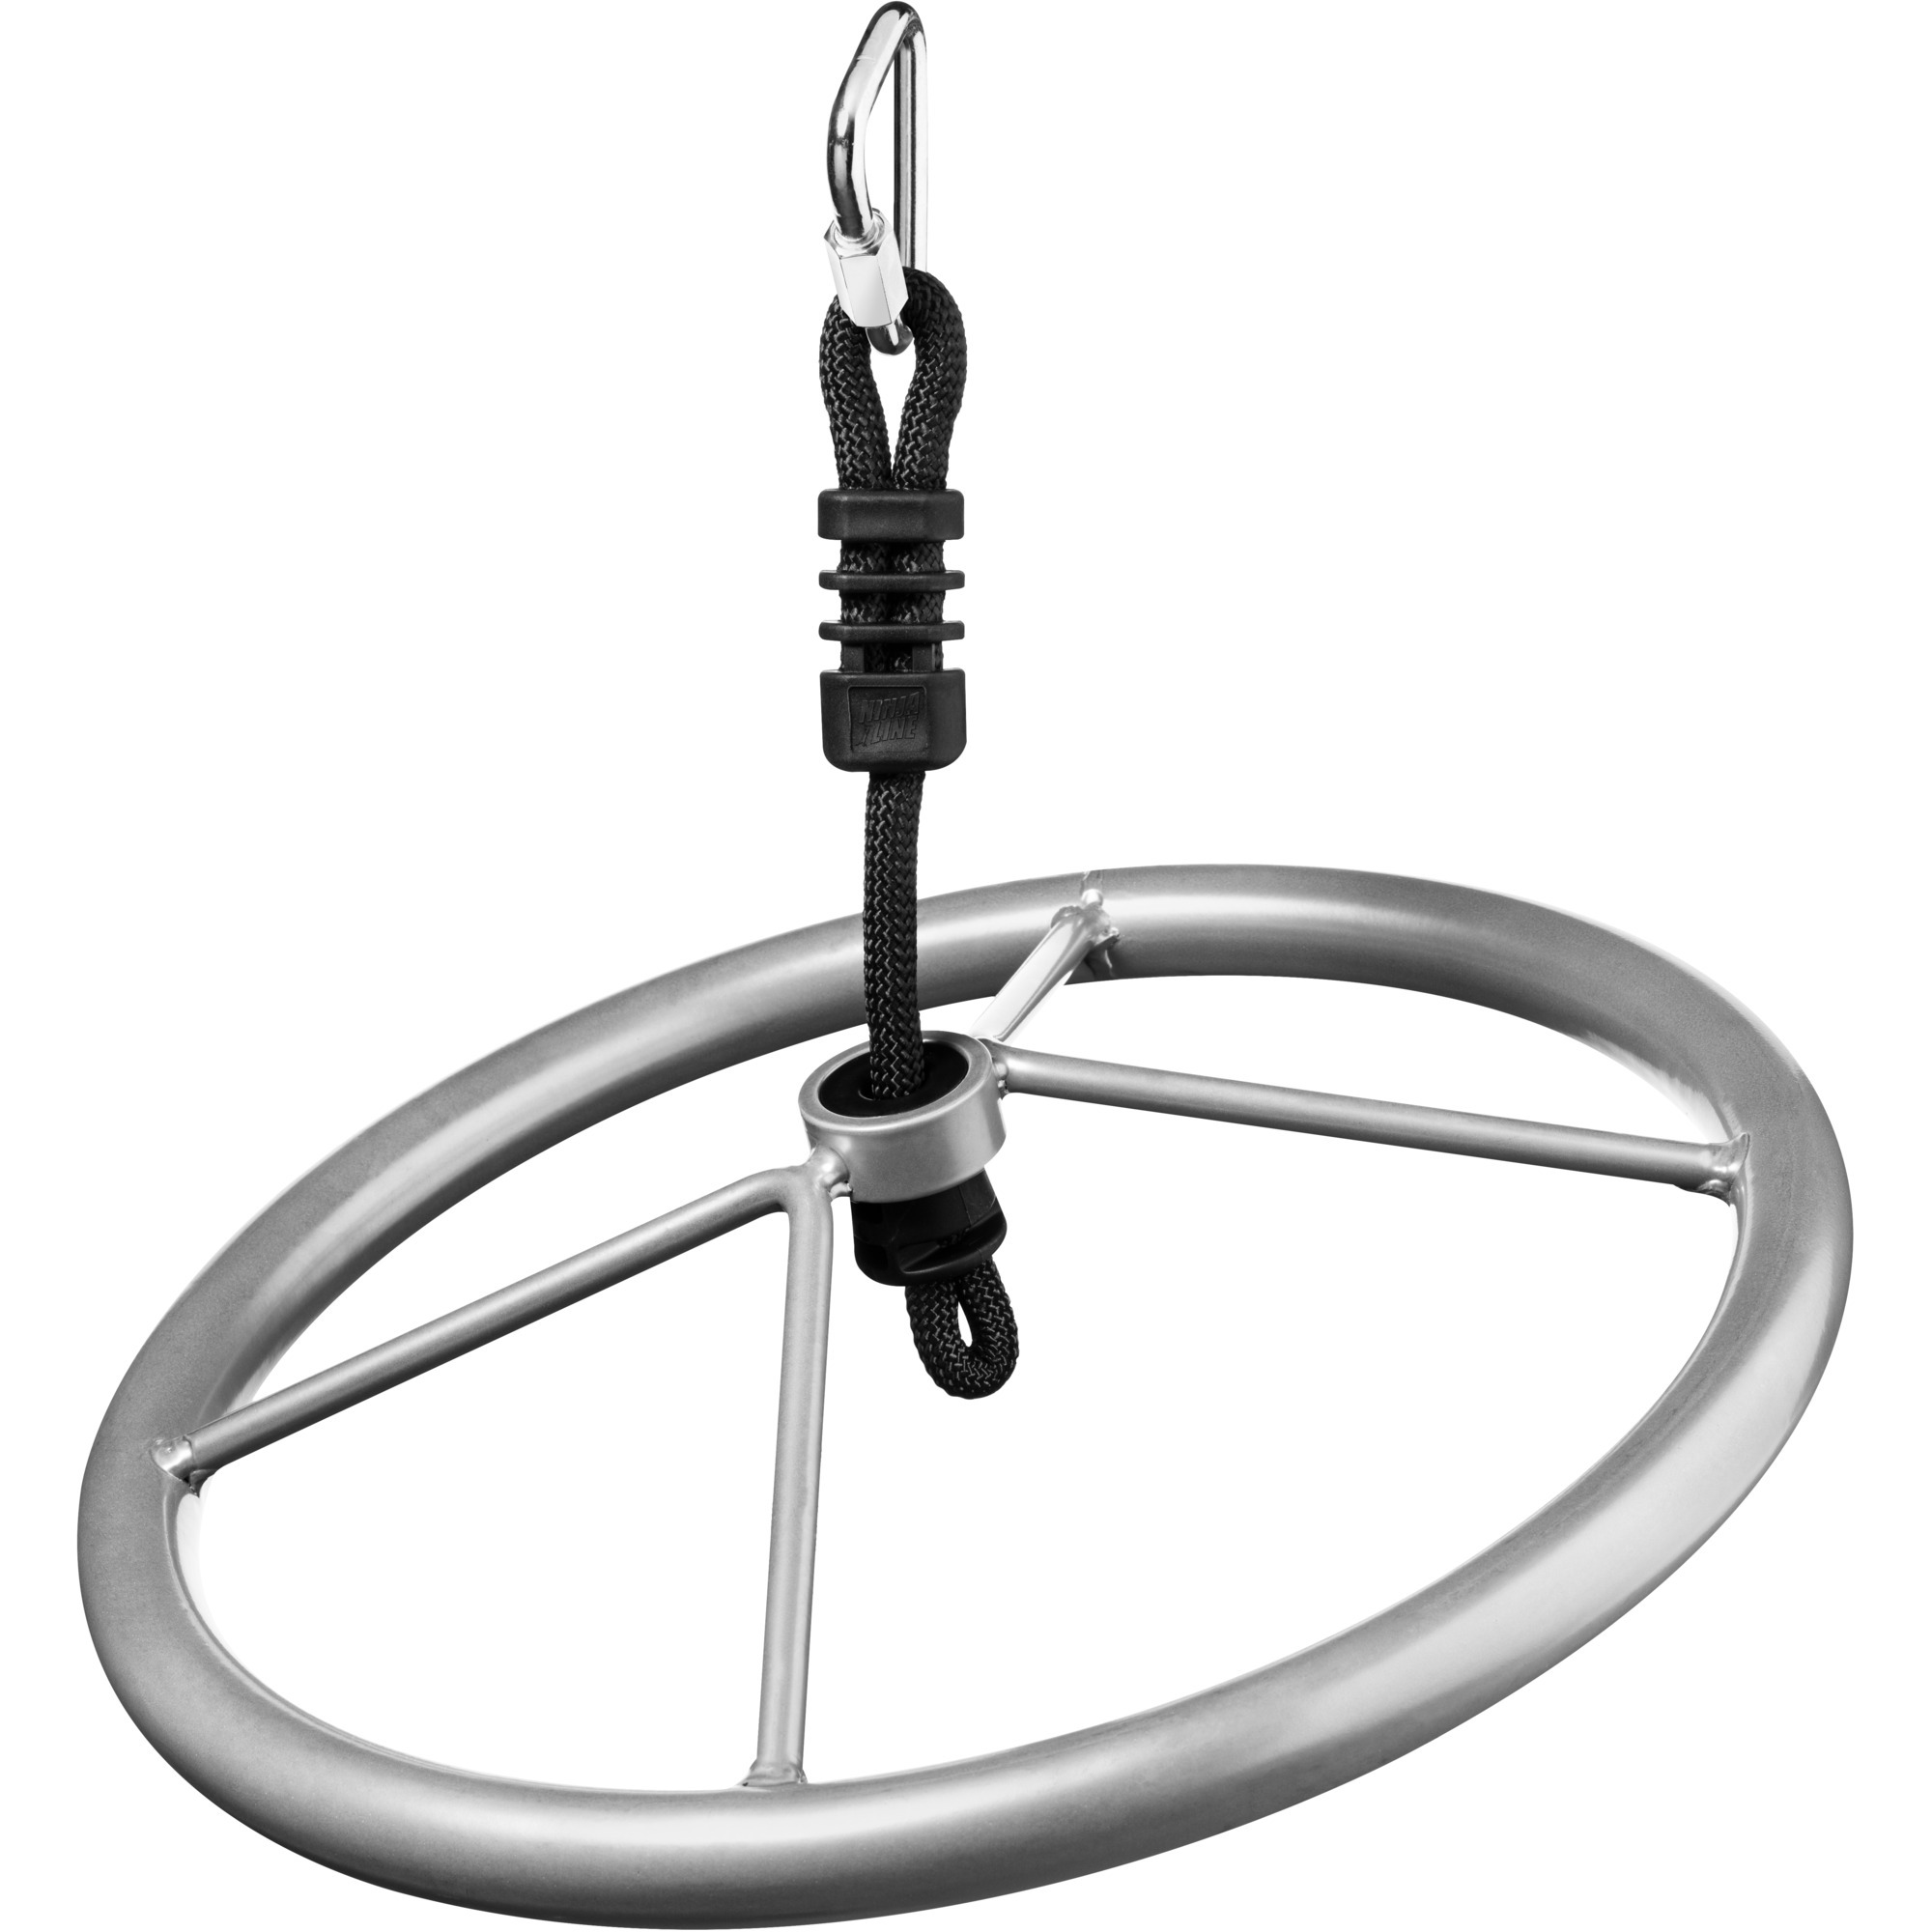 Image of Alternate - Ninja Wheel, Gartenspielgerät online einkaufen bei Alternate